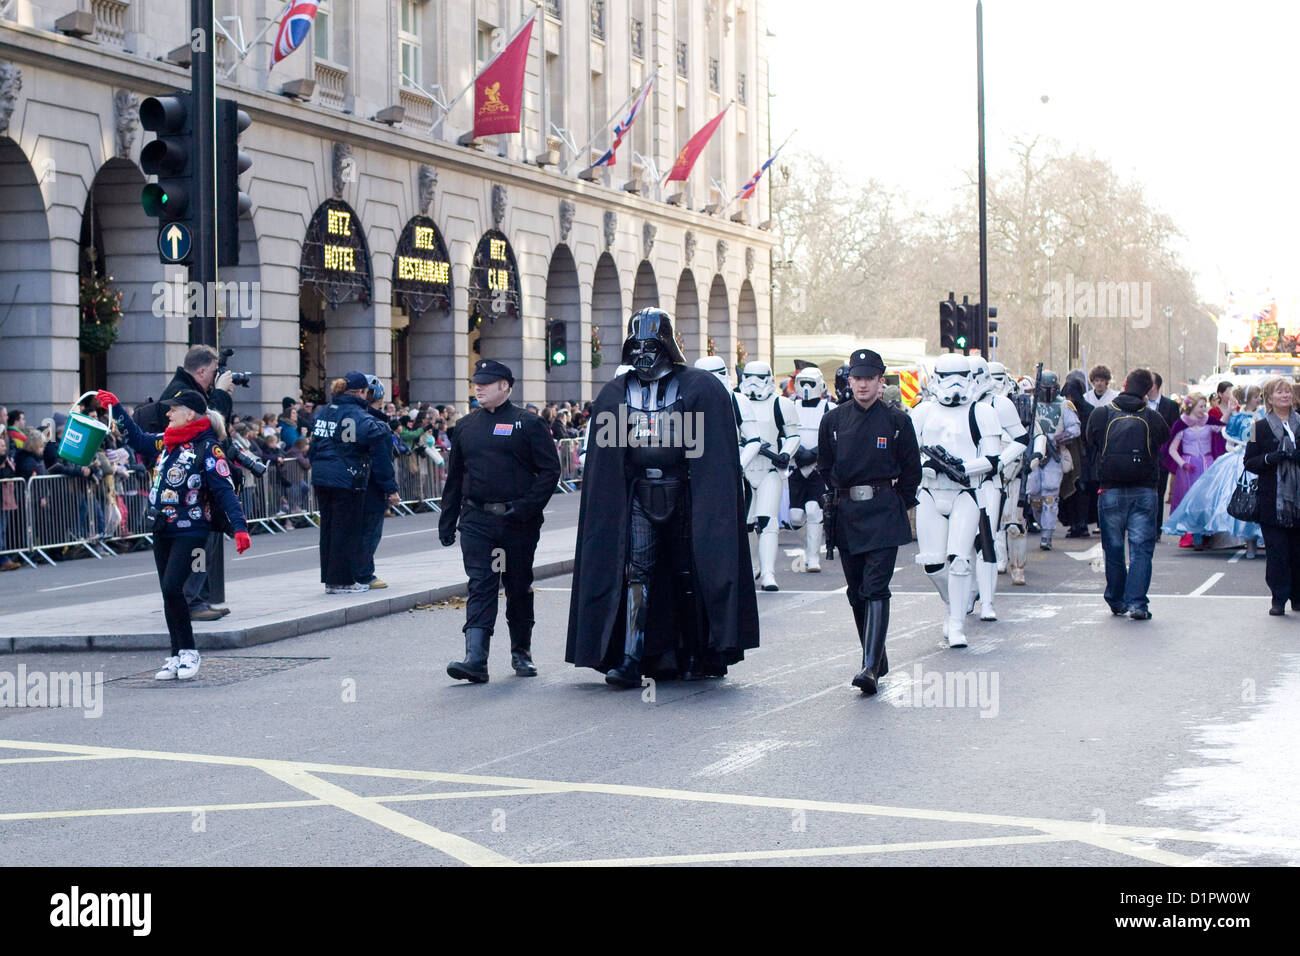 London's défilé du Nouvel An en 2013 Dark Vador de Star Wars films dans les rues de Londres Banque D'Images